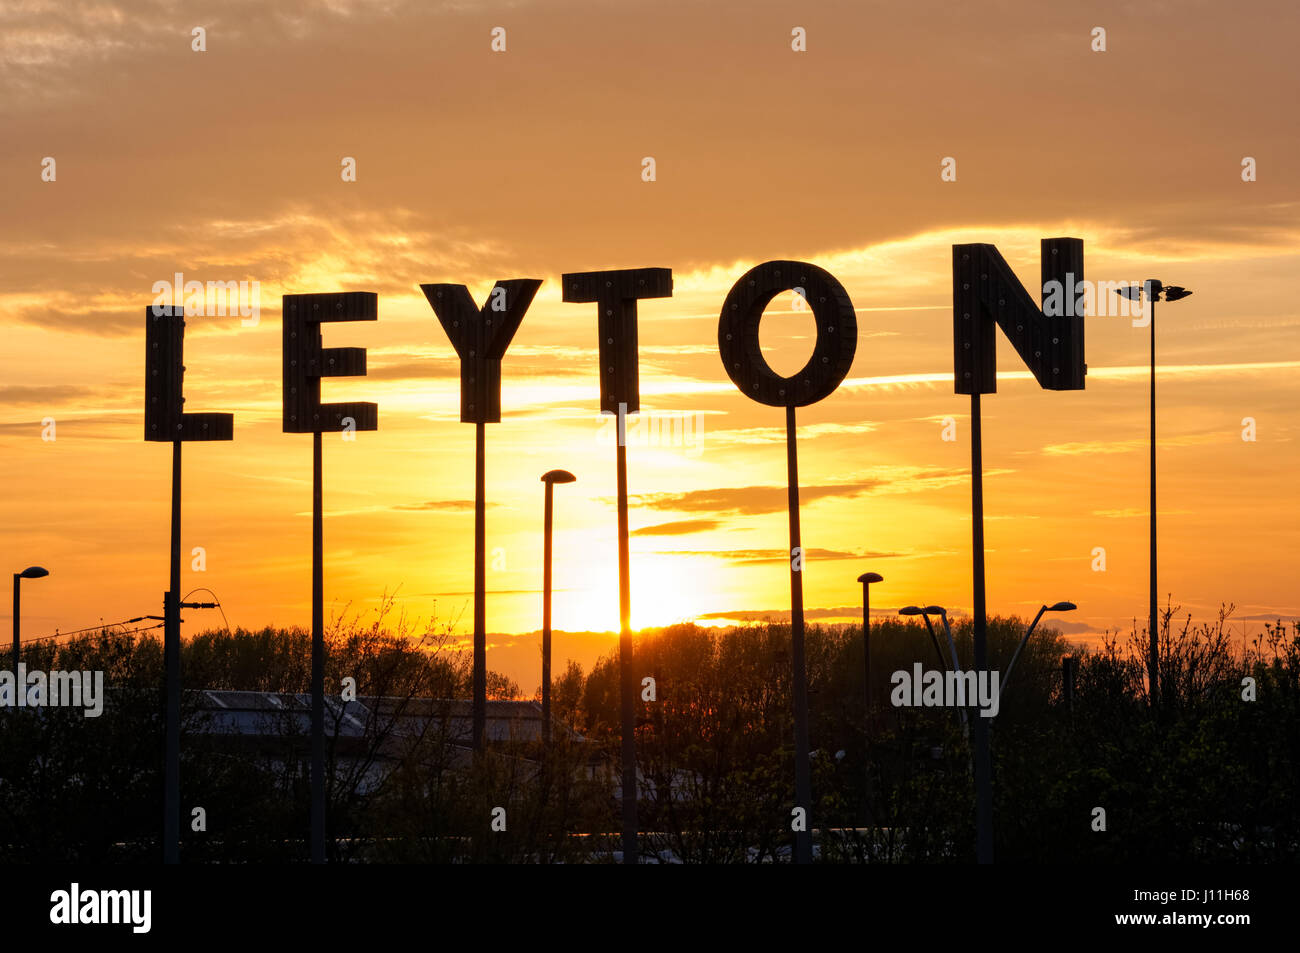 Leyton sign at sunset, London England United Kingdom UK Stock Photo